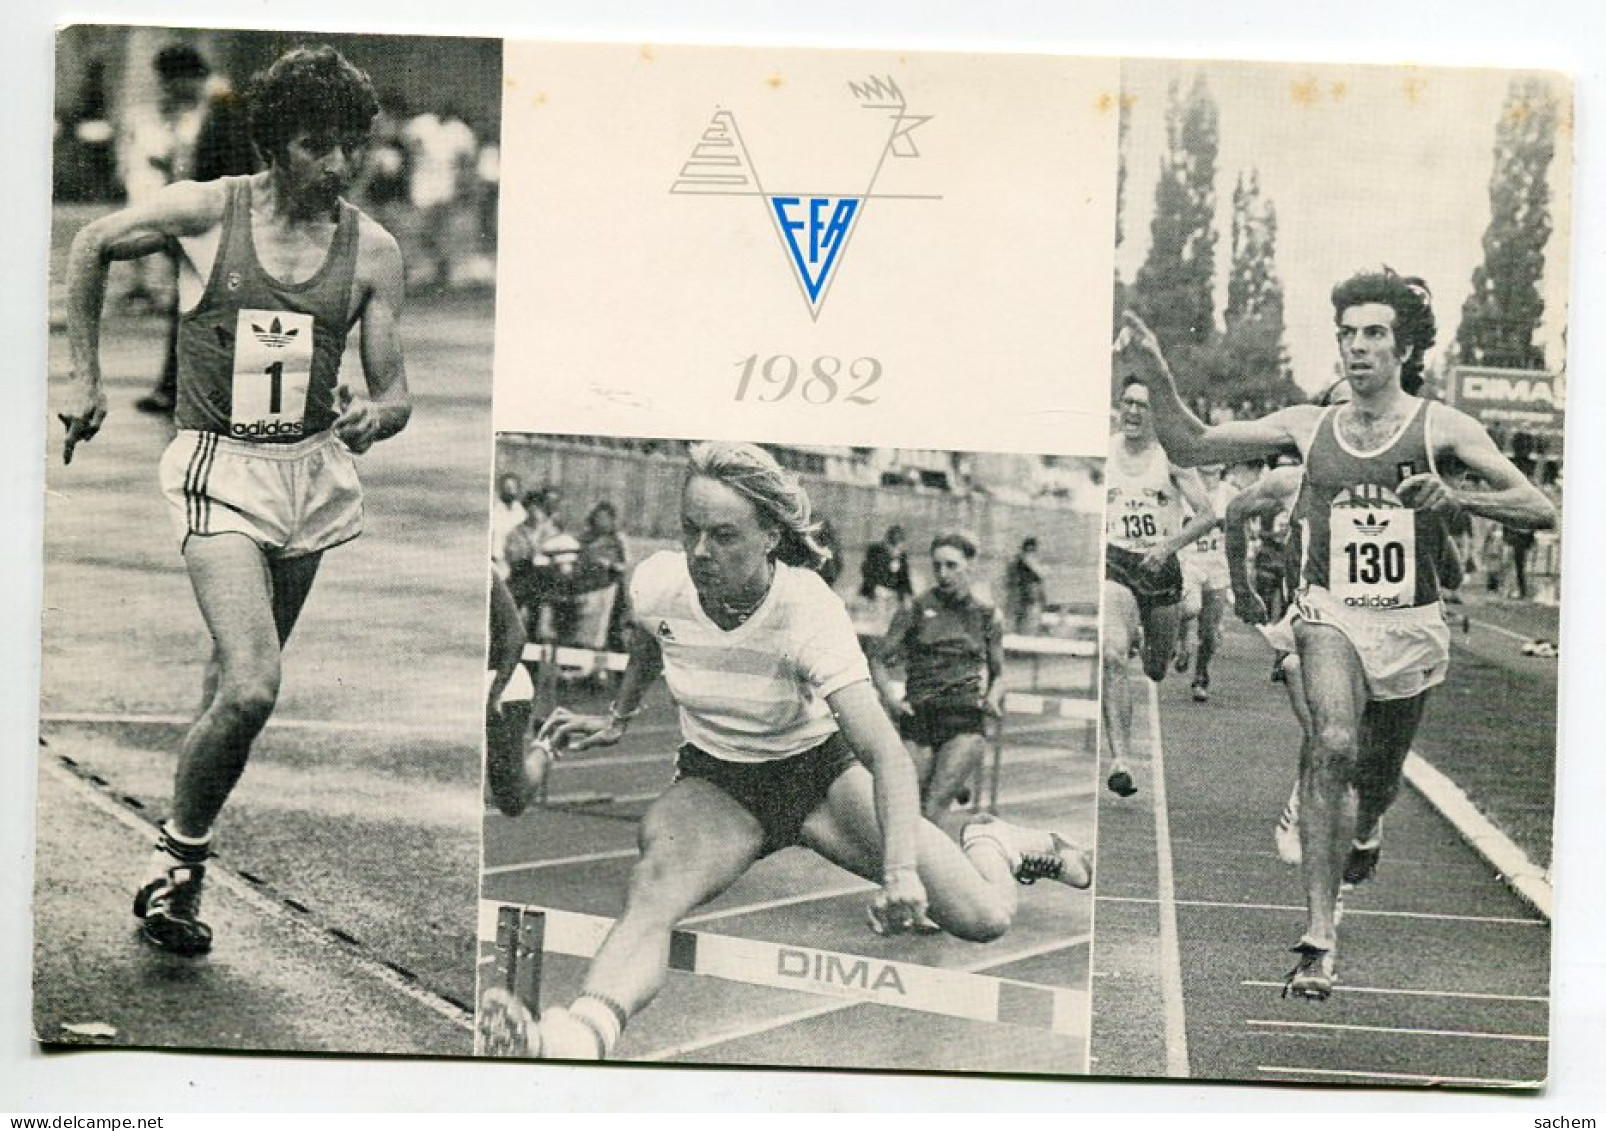 ATHLETISME Carte Double Voeux Pour 1982 De La Fédération  Francaise D'Athlétisme   D08 2021 - Athlétisme